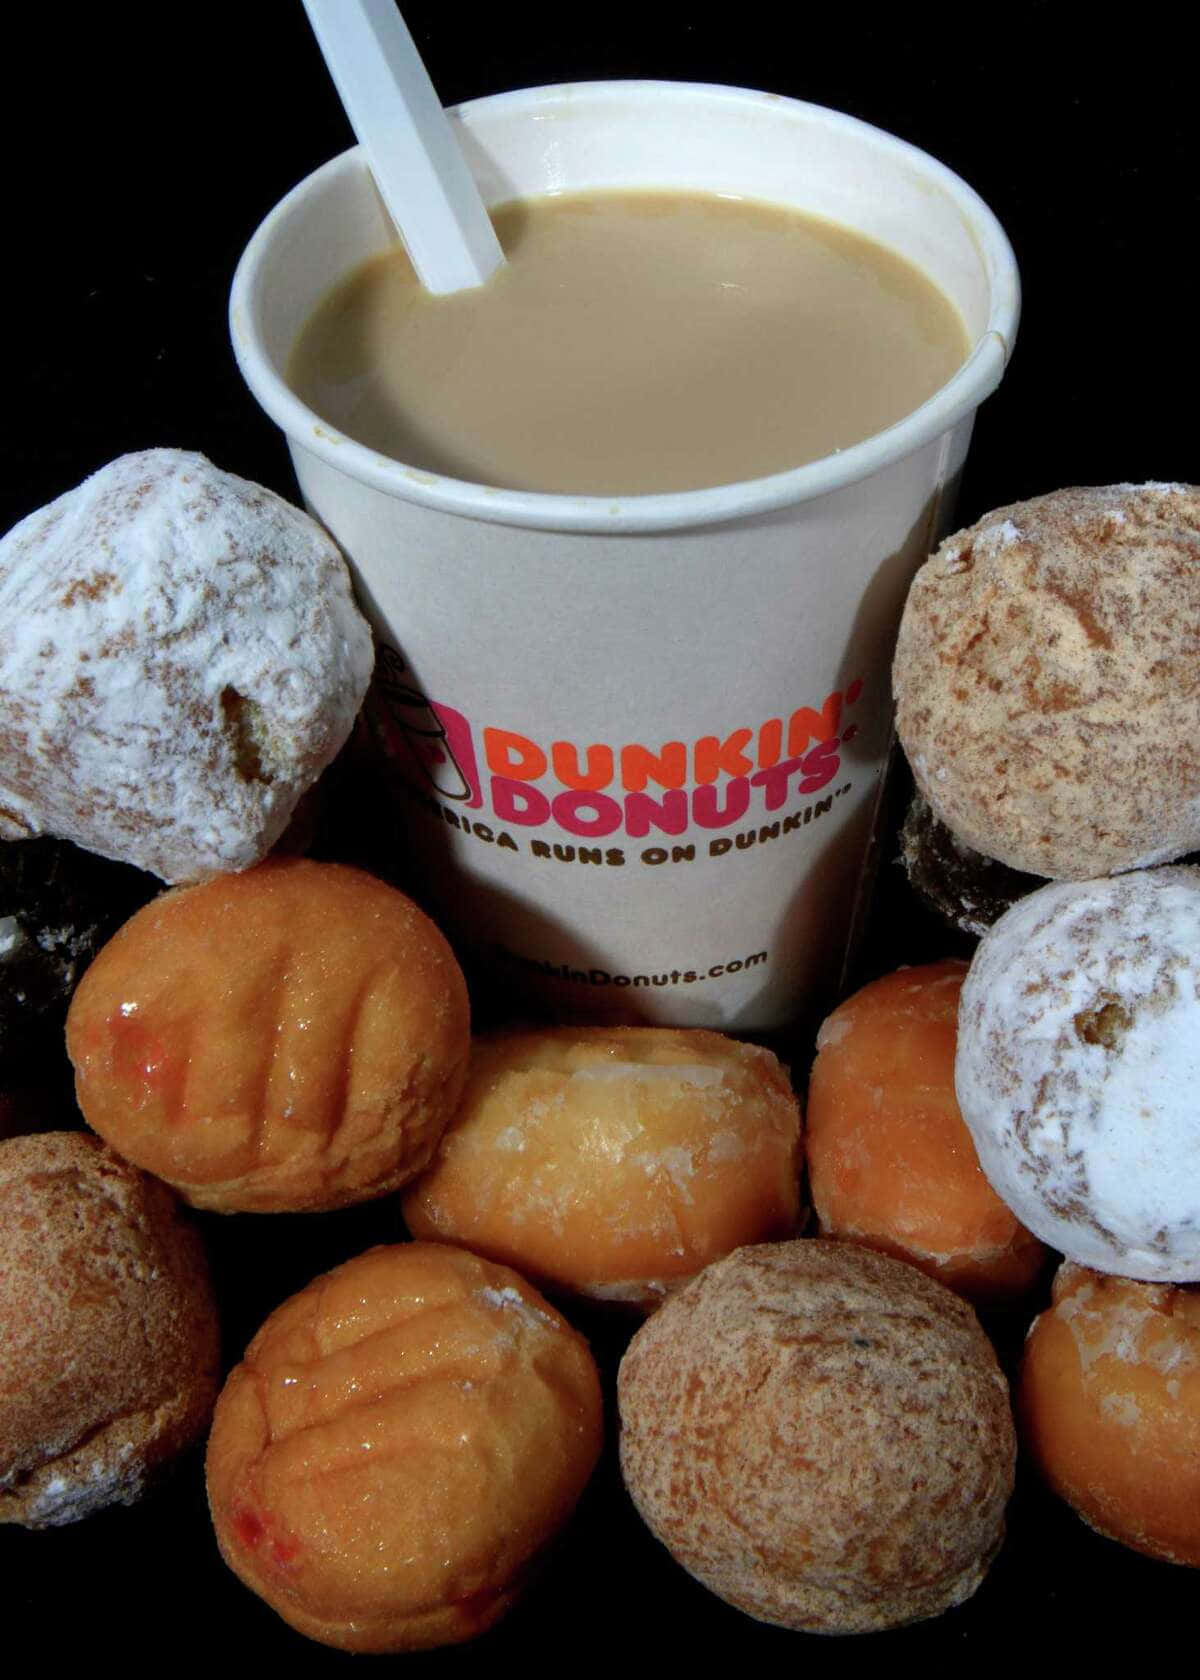 Iniziala Tua Giornata Nel Migliore Dei Modi Con Una Deliziosa Leccornia Di Dunkin Donuts!